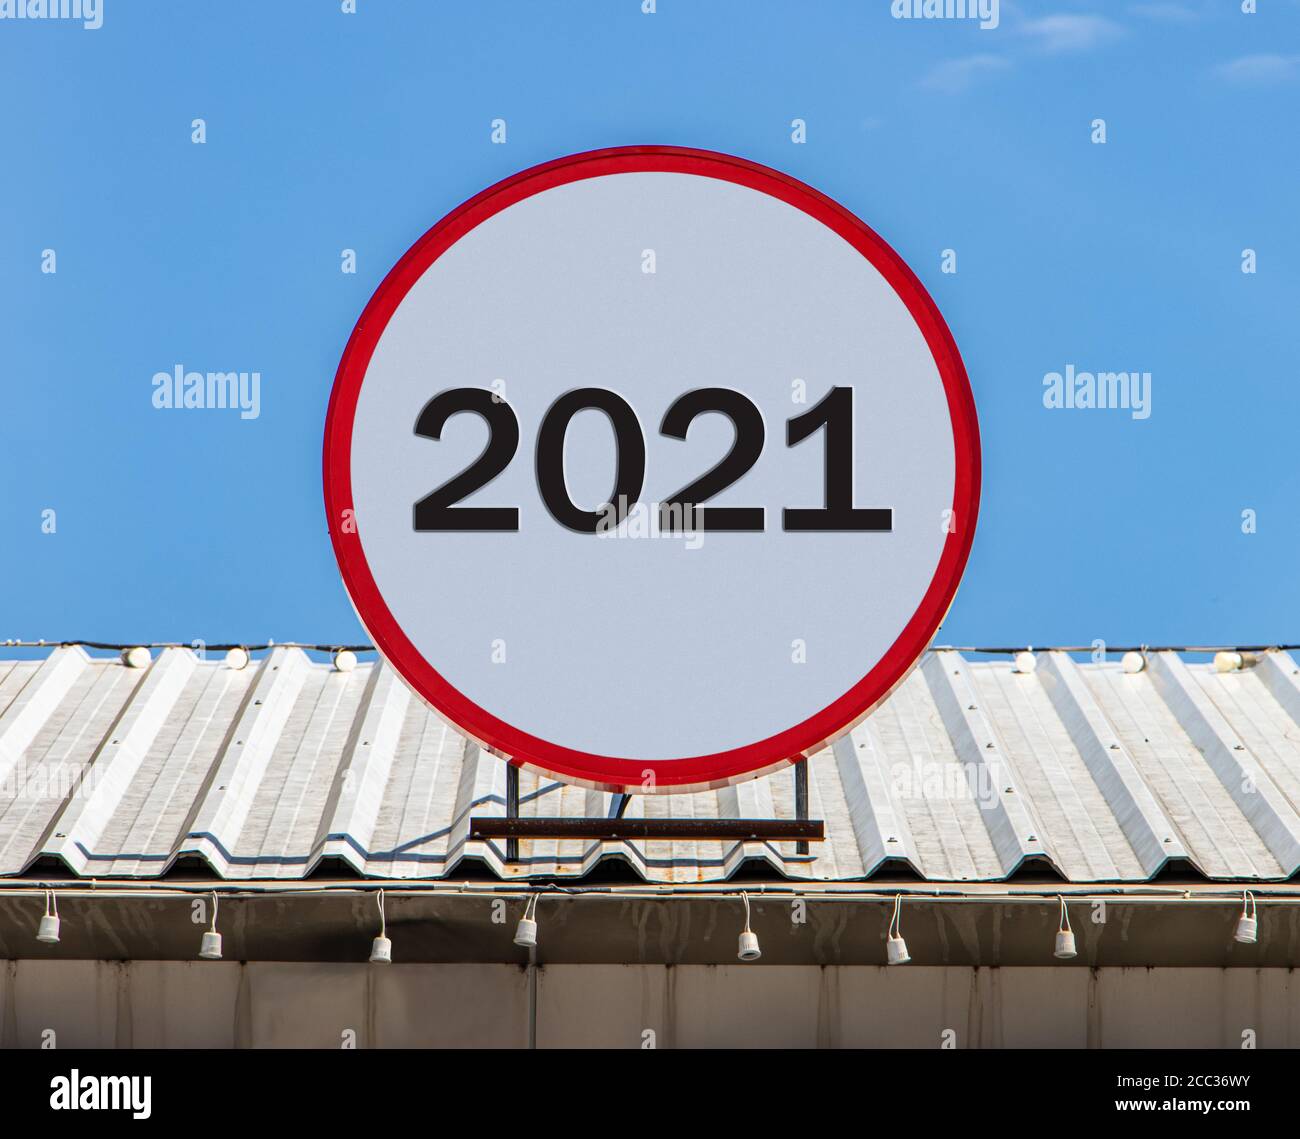 Eine Circle Plakatwand mit der Nummer 2021 ist auf einem Dach installiert. Gruß für das neue Jahr 2021. Stockfoto